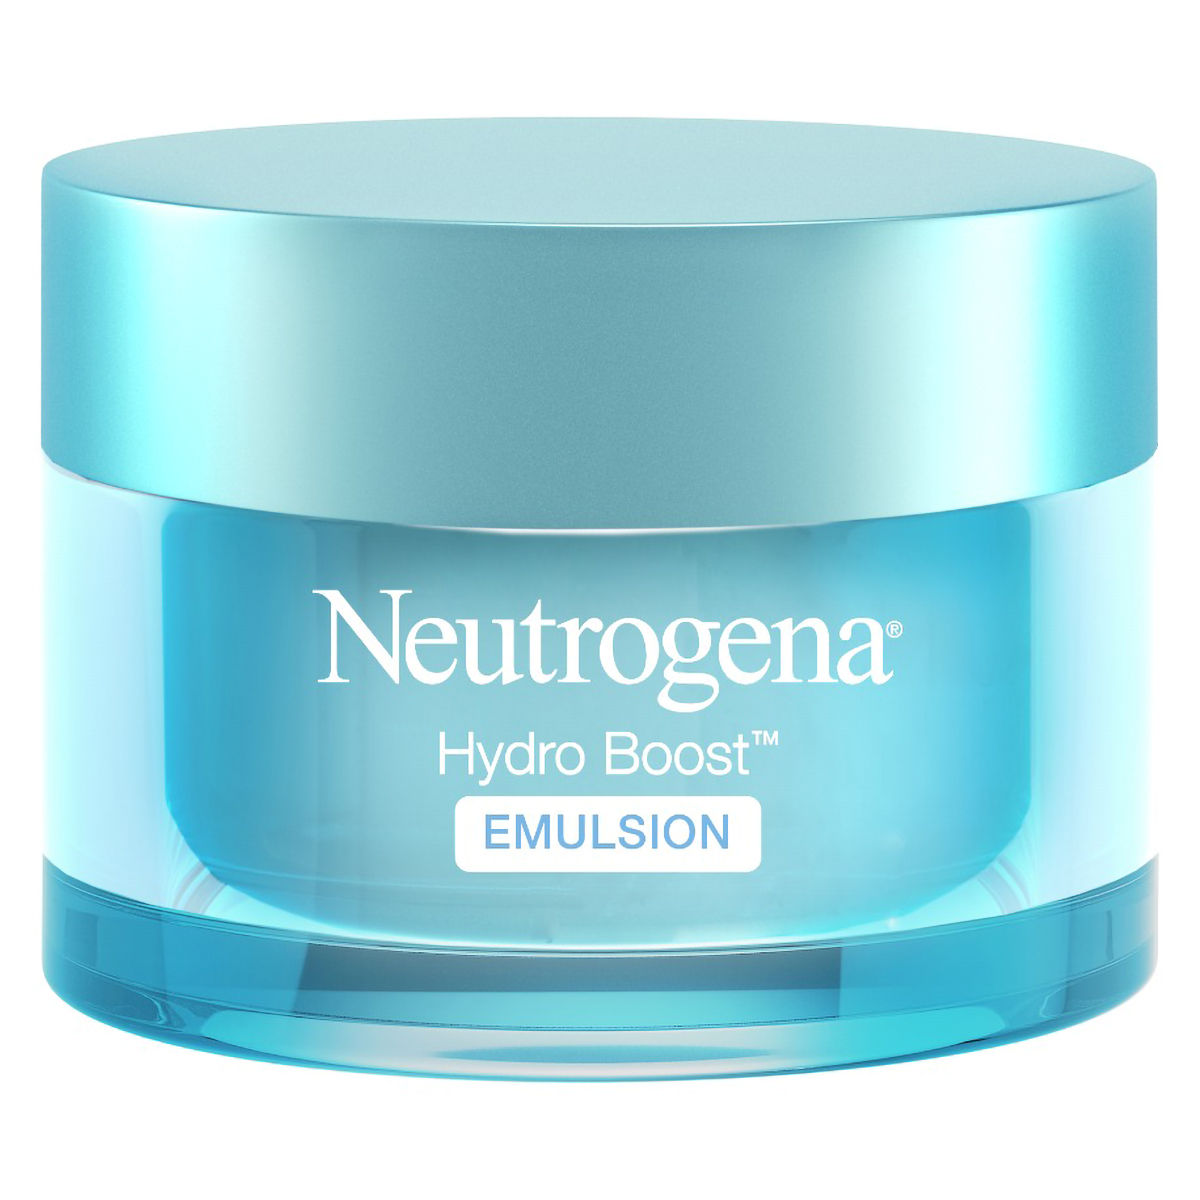 Buy Neutrogena Hydro Boost Emulsion, 50 gm Online